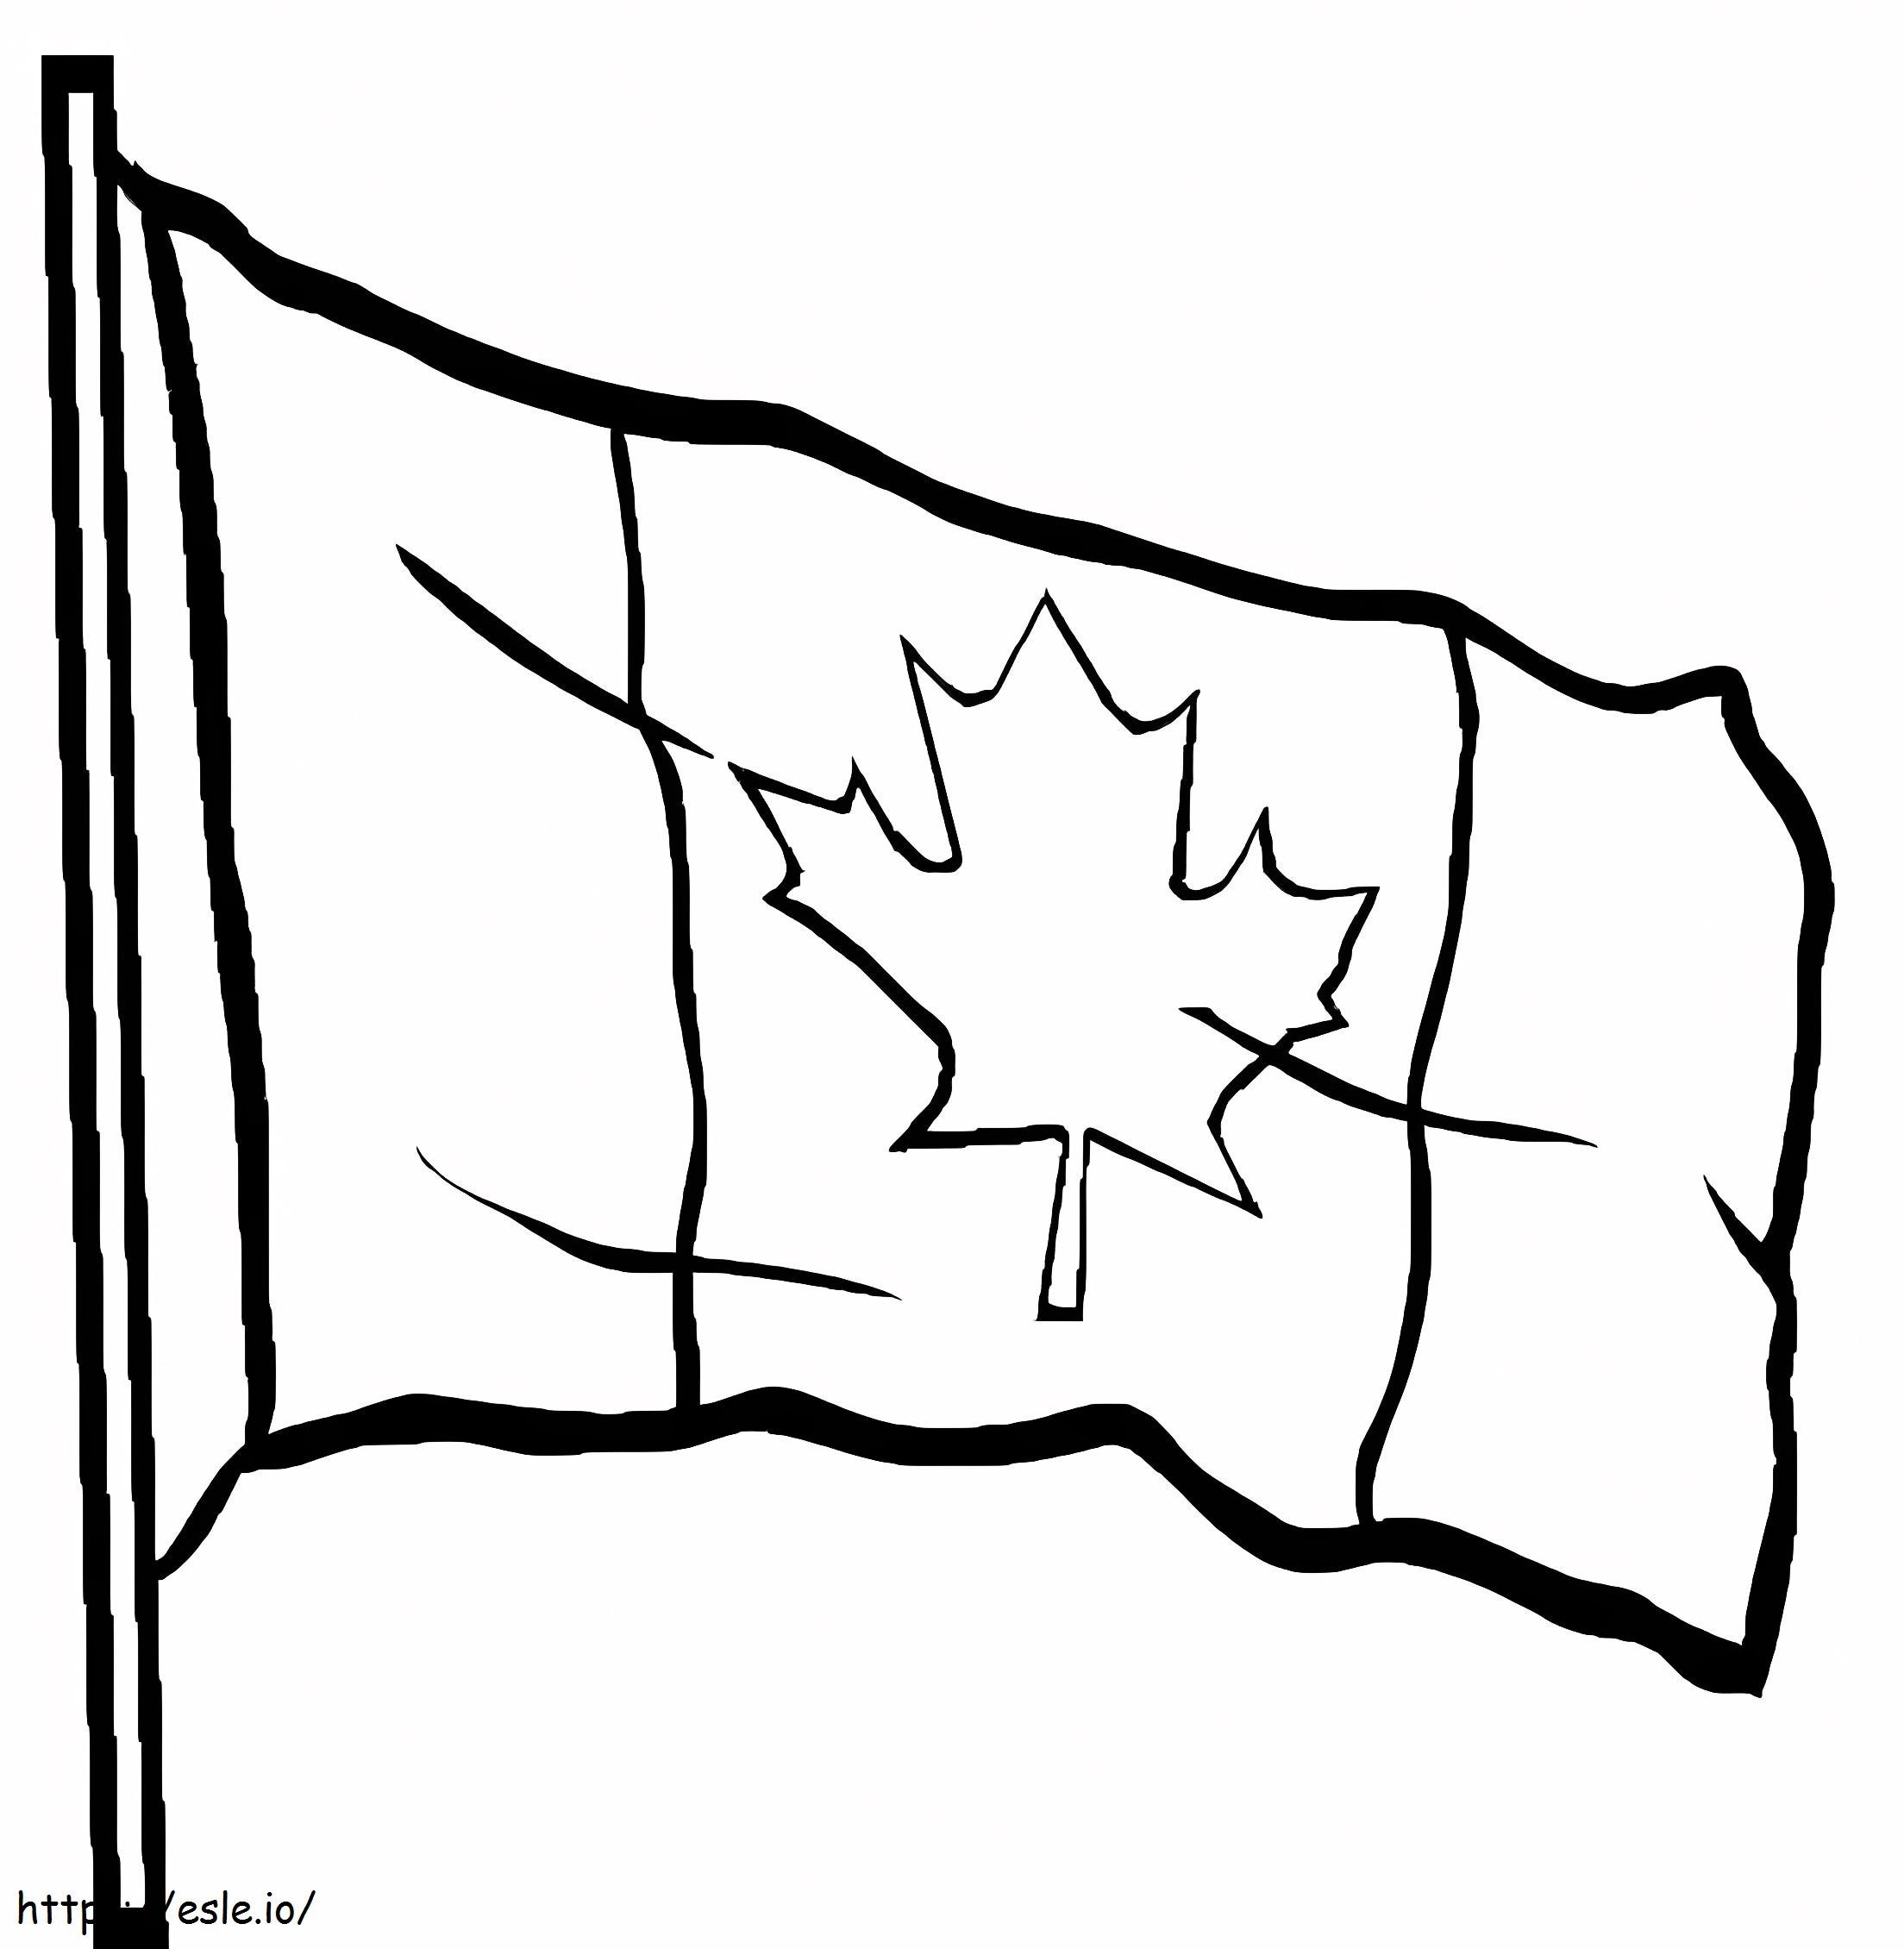 Bandeira Canadense 2 para colorir